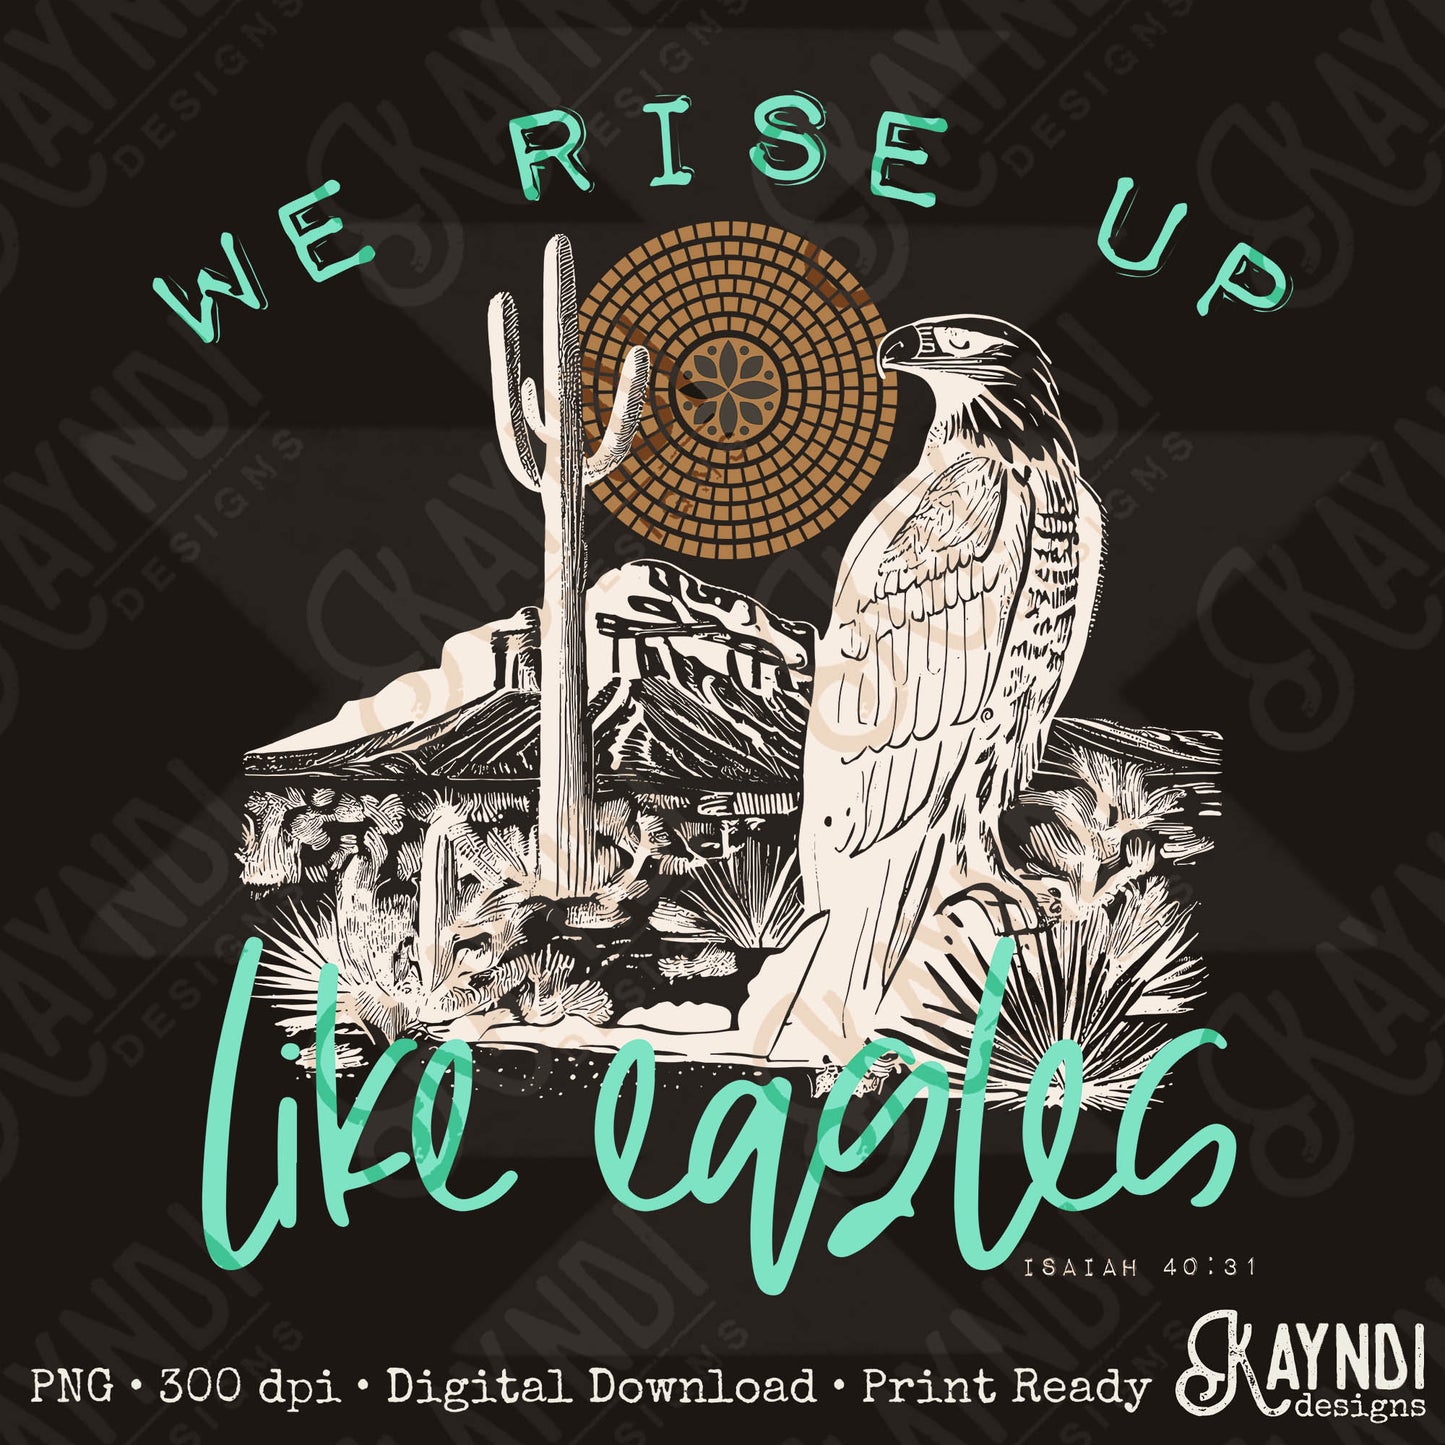 We Rise Up Like Eagles Sublimation Design PNG Digital Download Printable